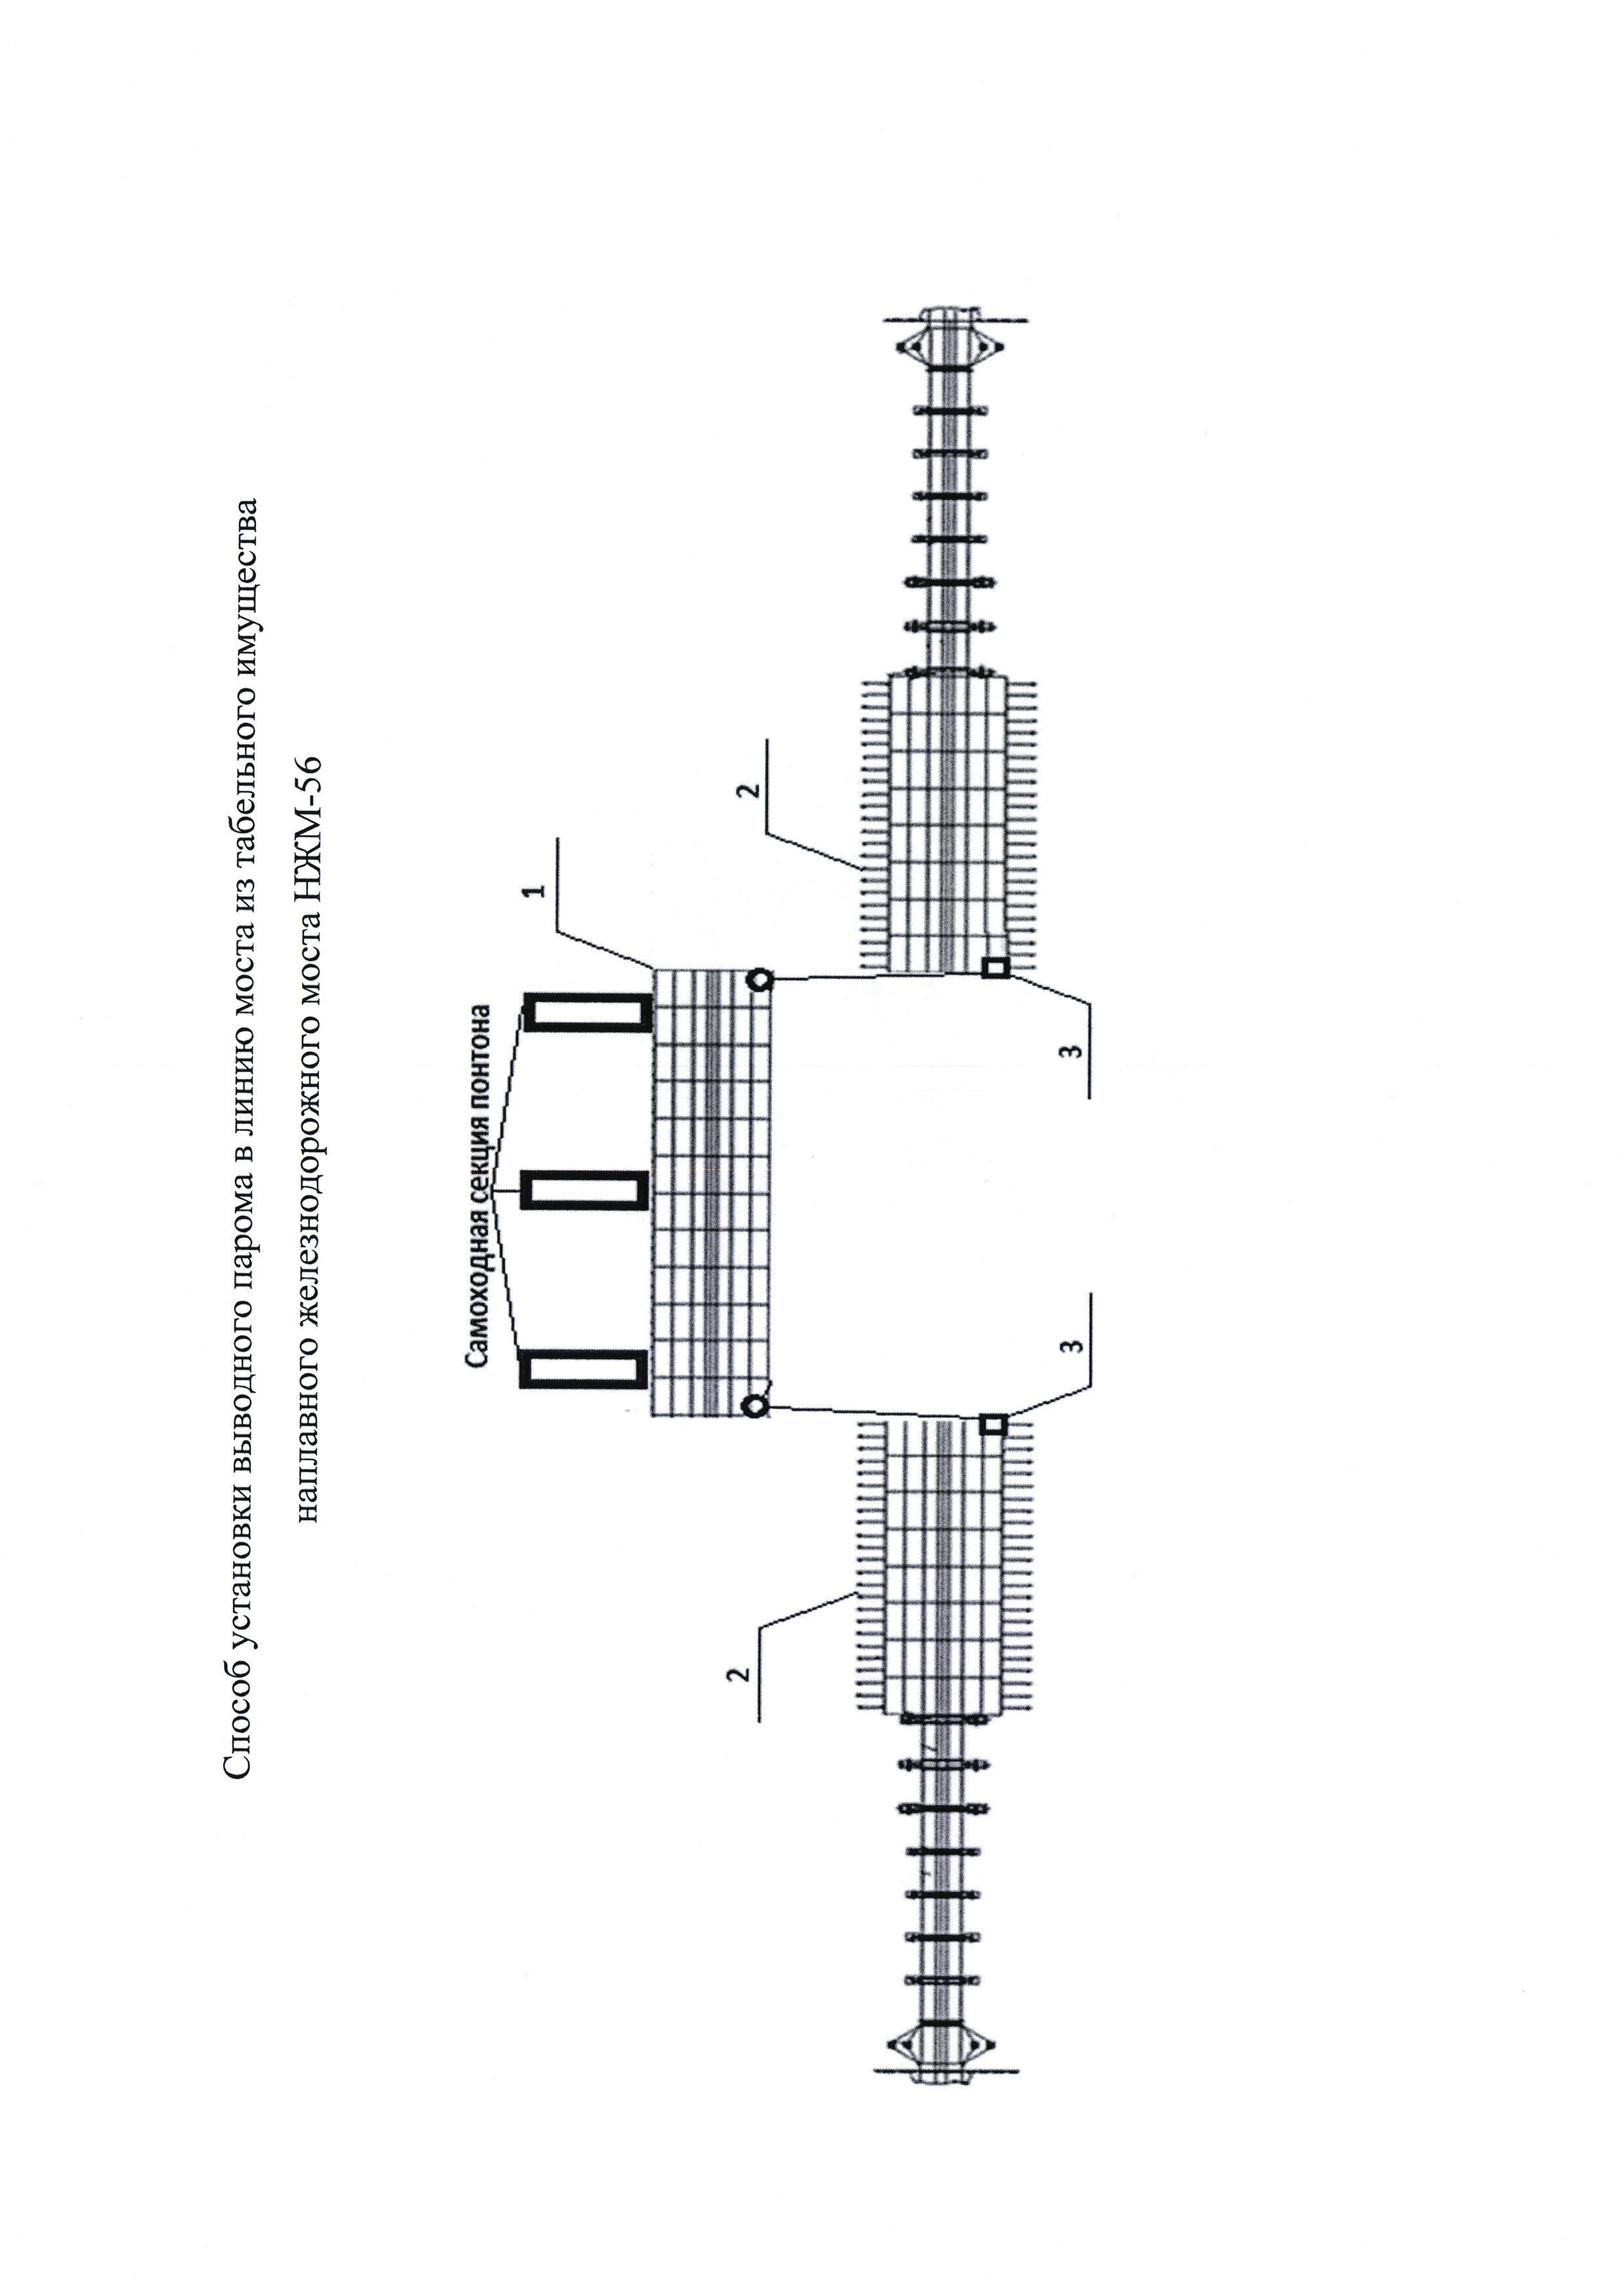 Способ установки выводного парома в линию моста из табельного имущества наплавного железнодорожного моста (НЖМ-56)